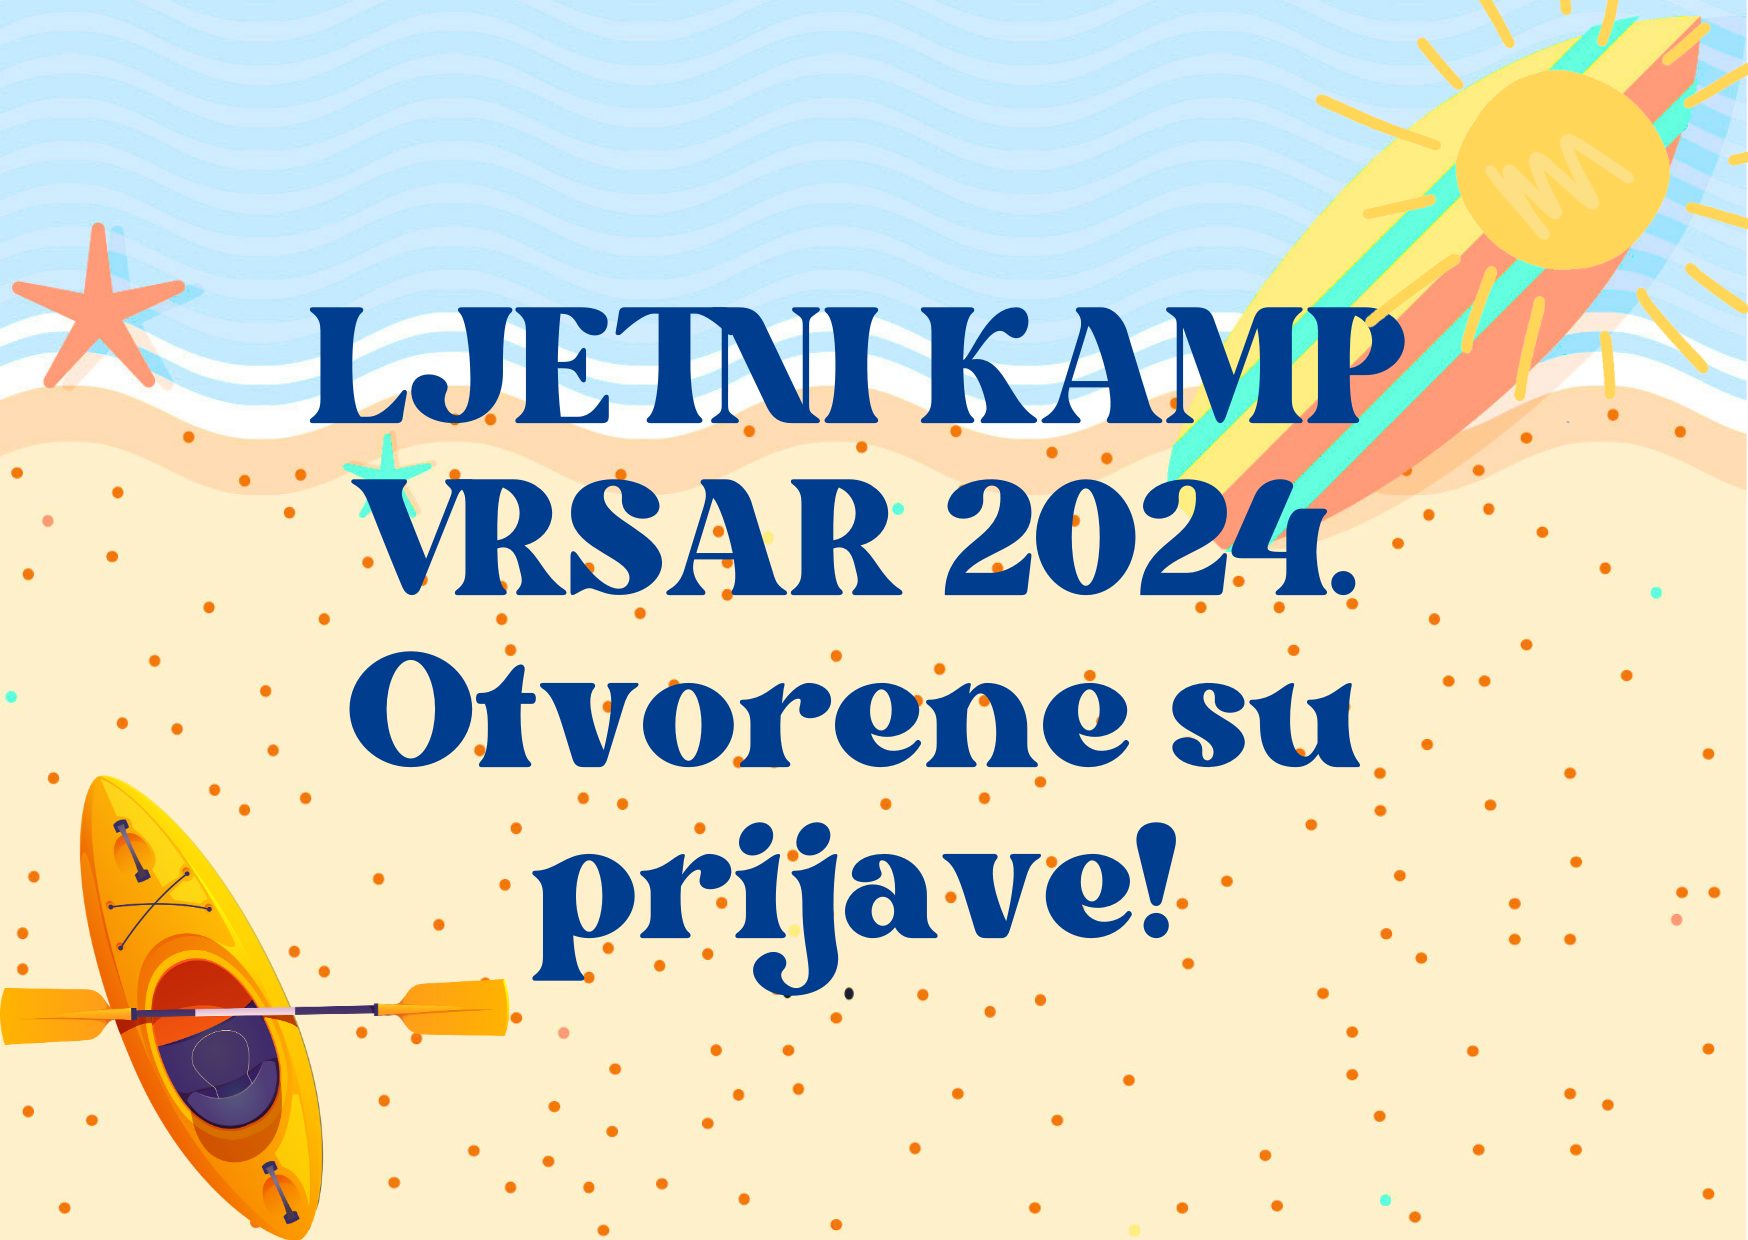 Društvo “Naša djeca” Vrsar – otvorene su prijave za ljetni kamp u Vrsaru za 2024. godinu!